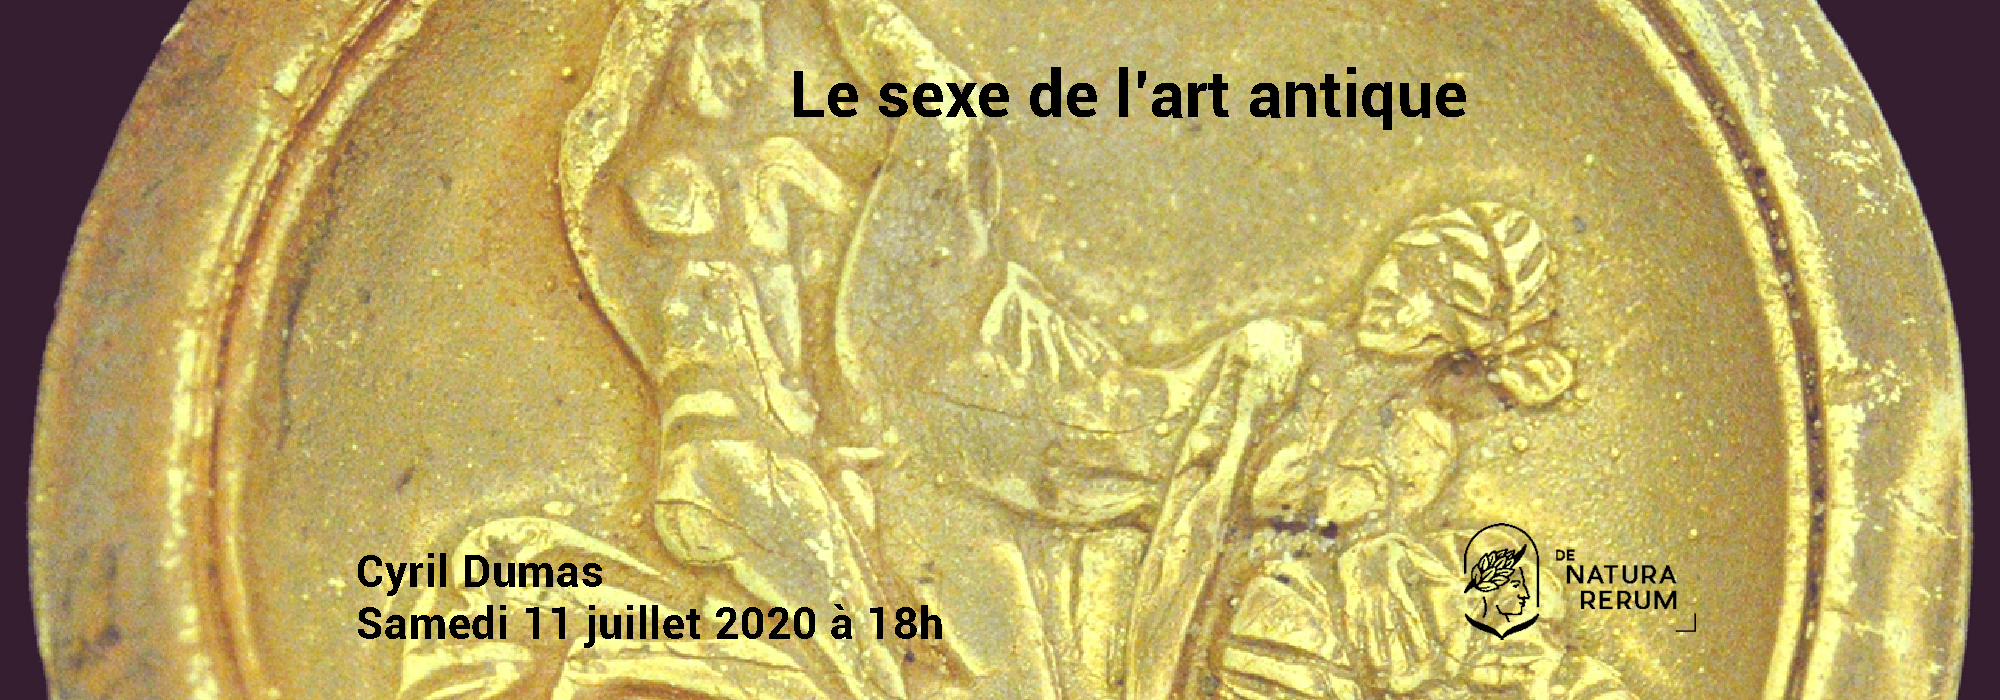 Le sexe de l'art antique. Cyril Dumas chez De natura rerum